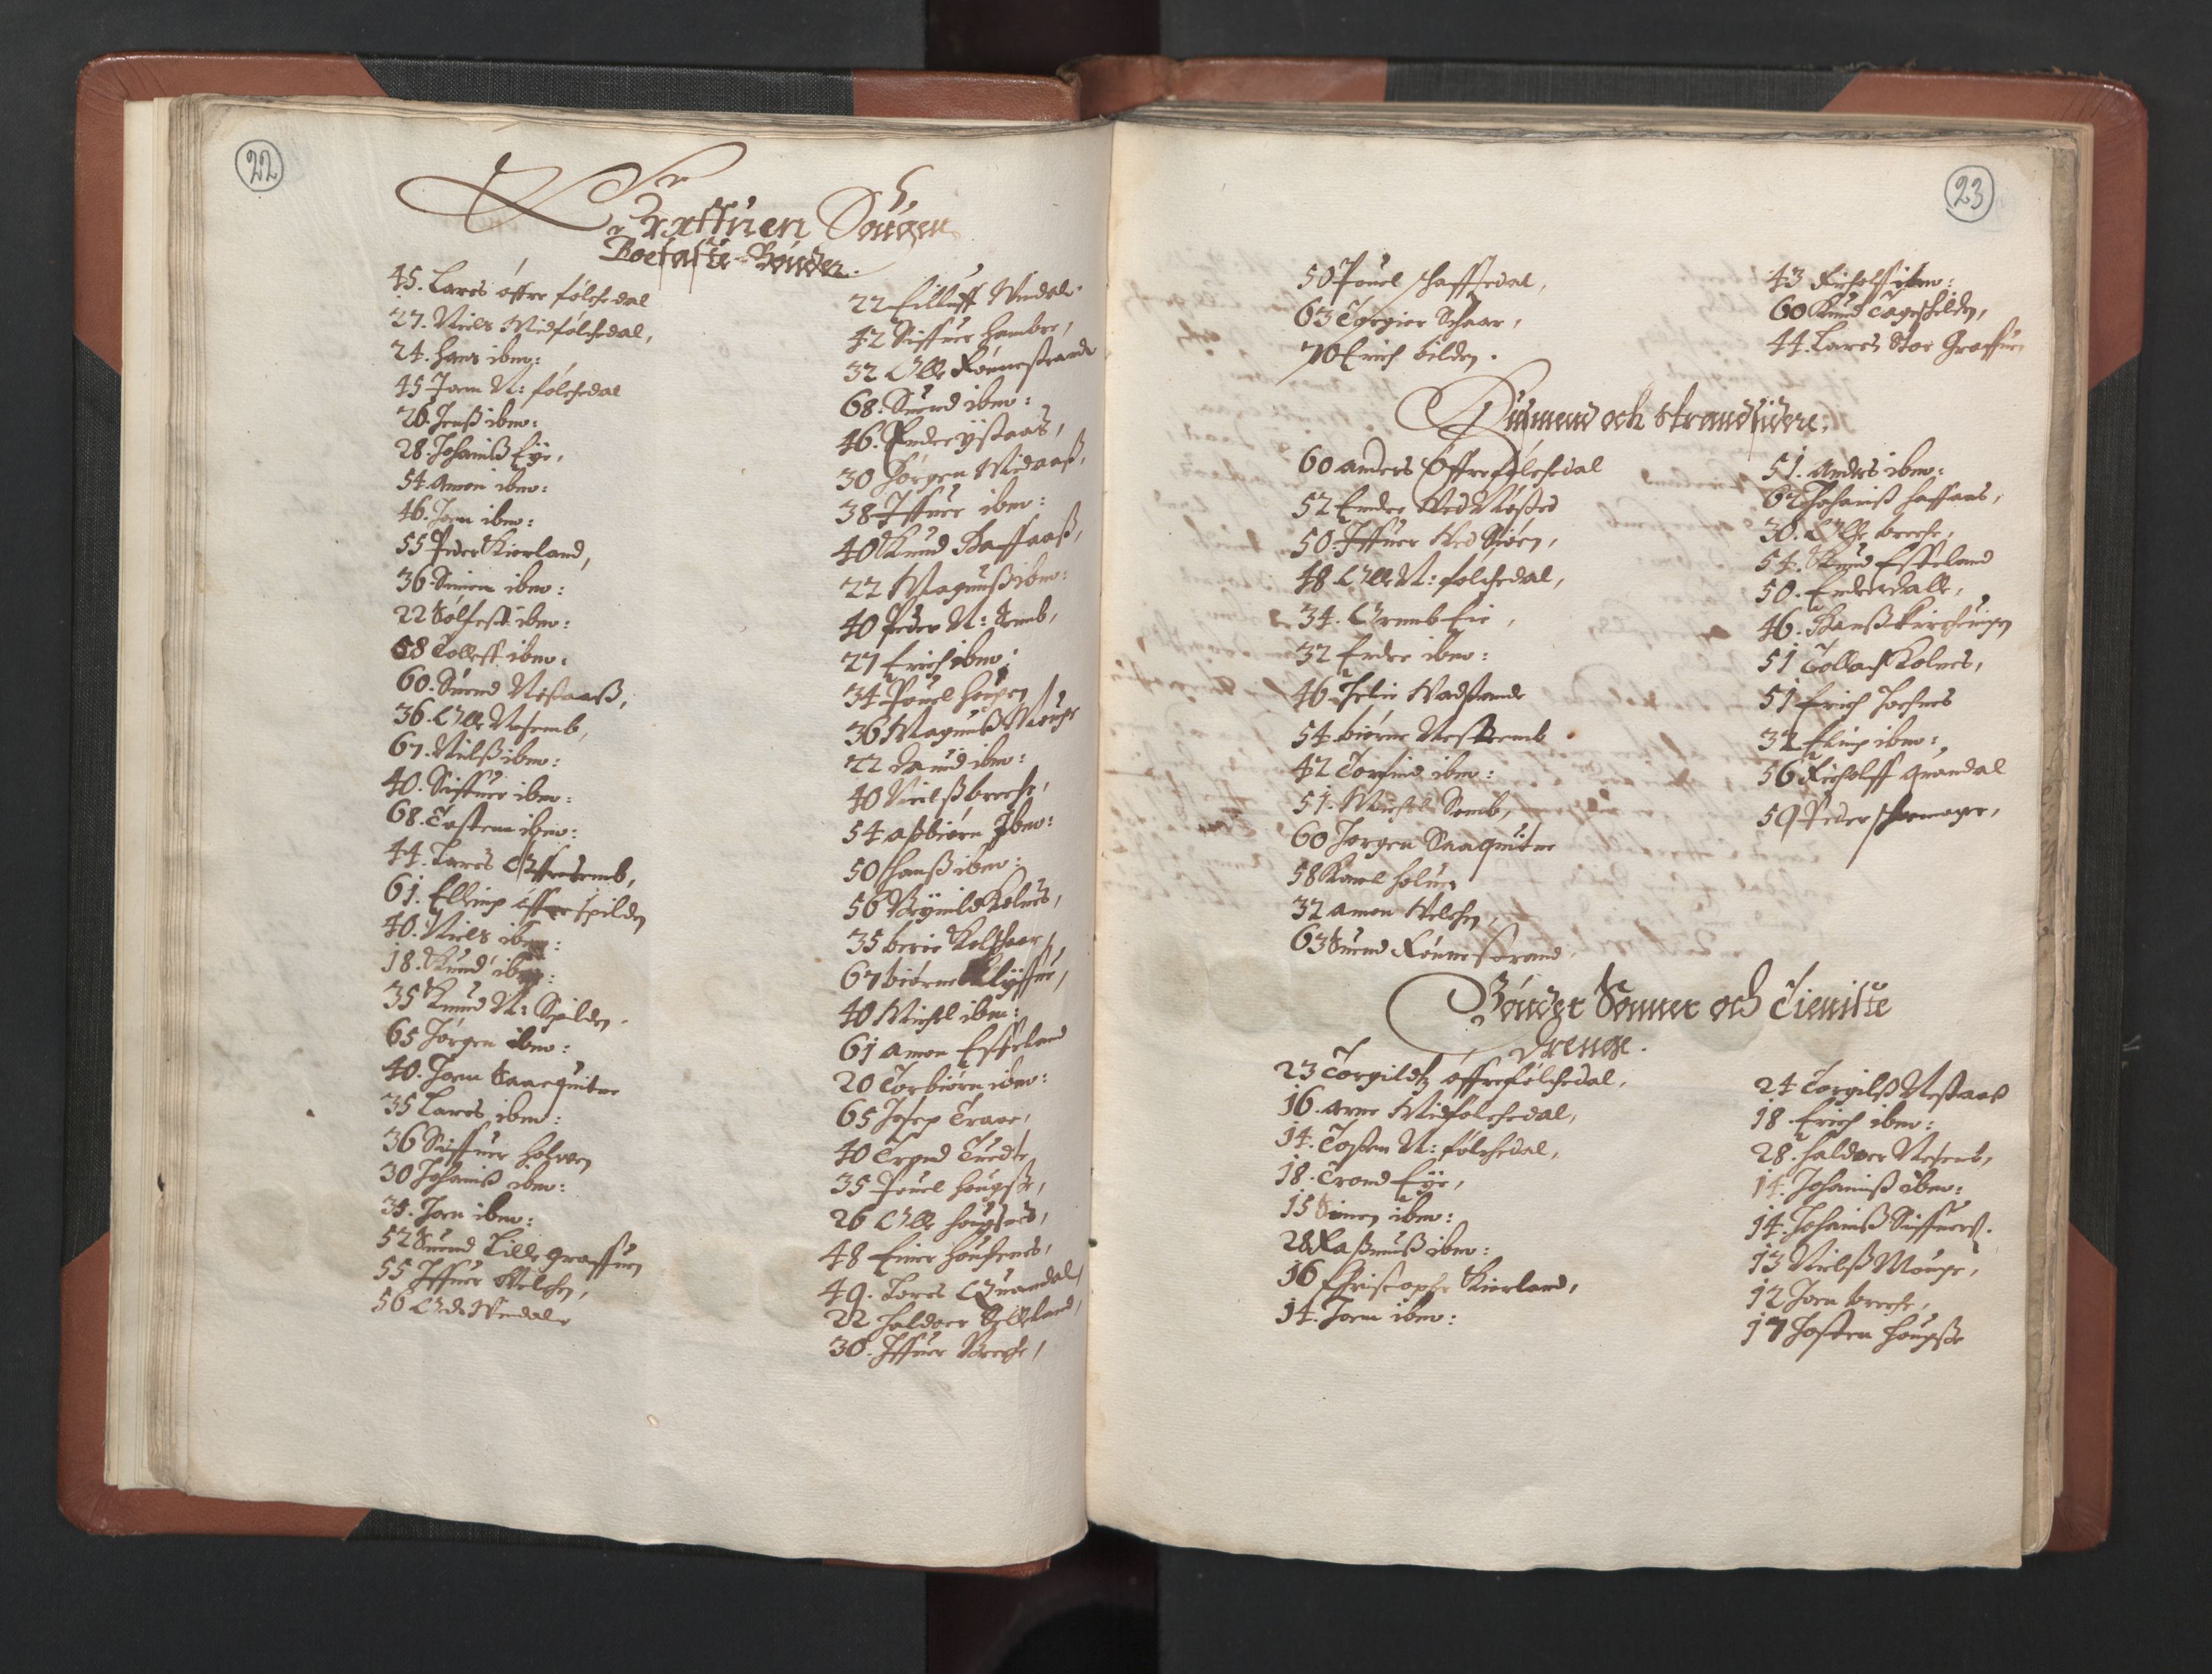 RA, Bailiff's Census 1664-1666, no. 14: Hardanger len, Ytre Sogn fogderi and Indre Sogn fogderi, 1664-1665, p. 22-23